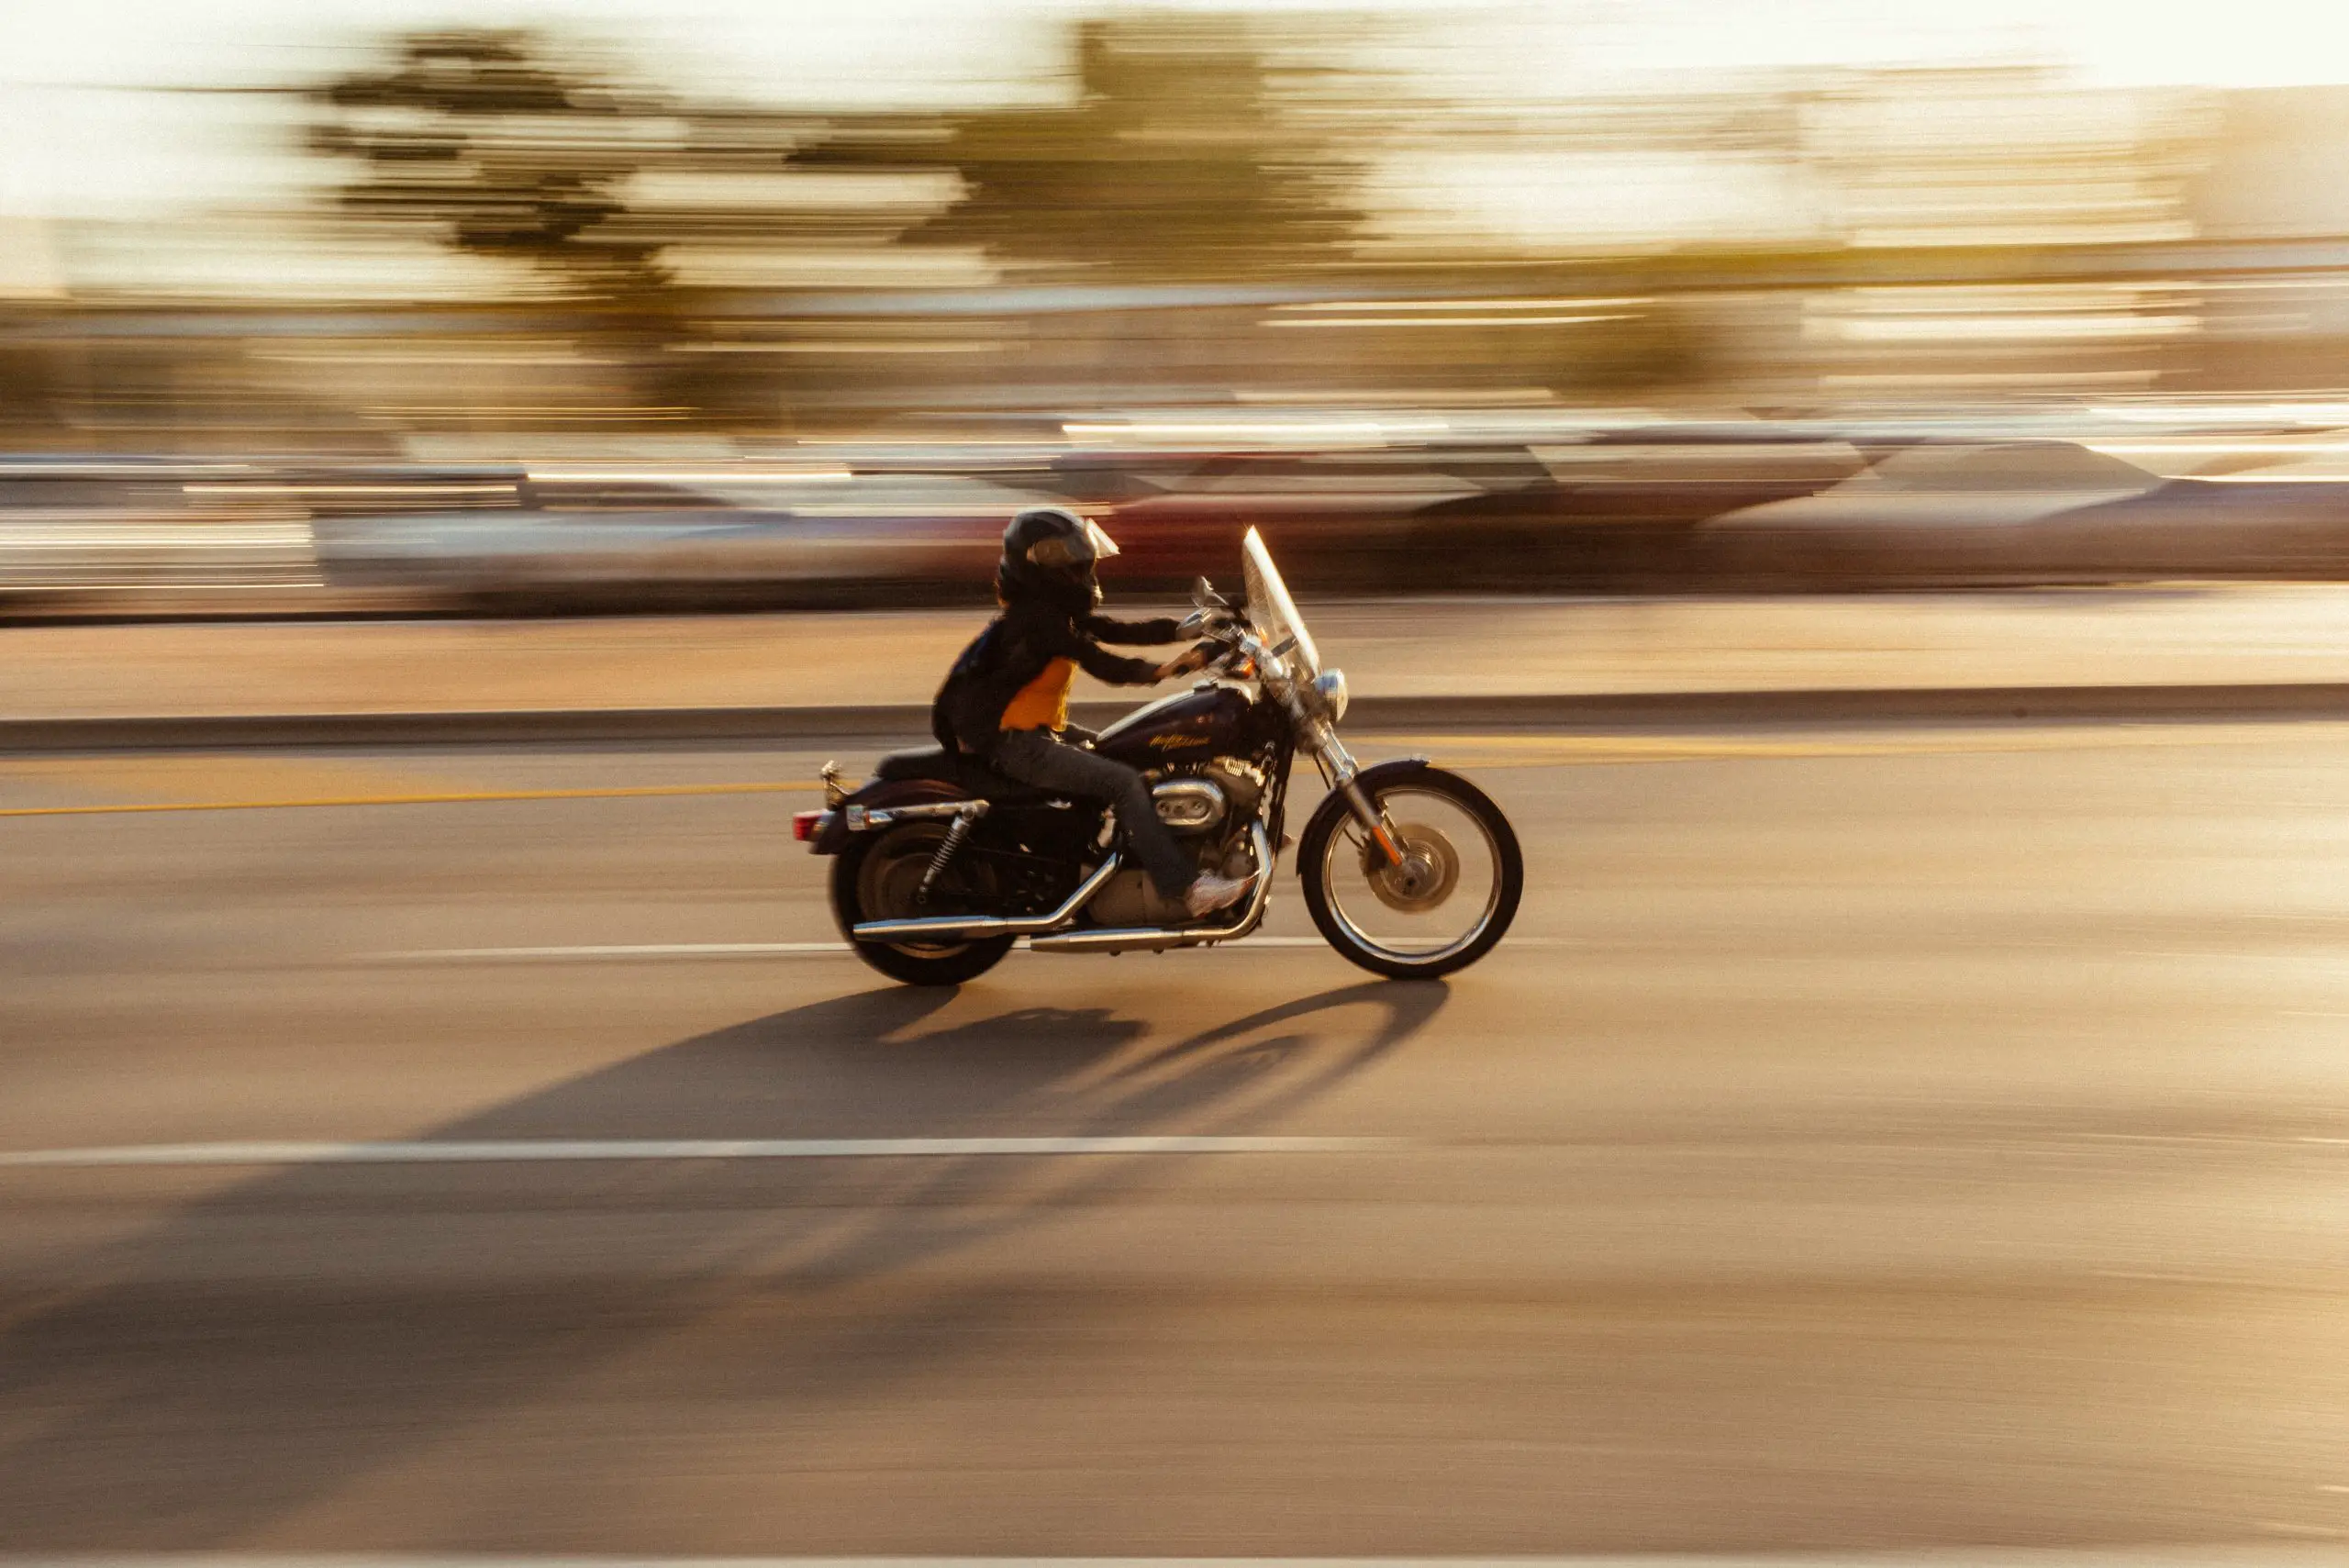 Mi motocicleta acelera por sí sola: ¿qué hacer?